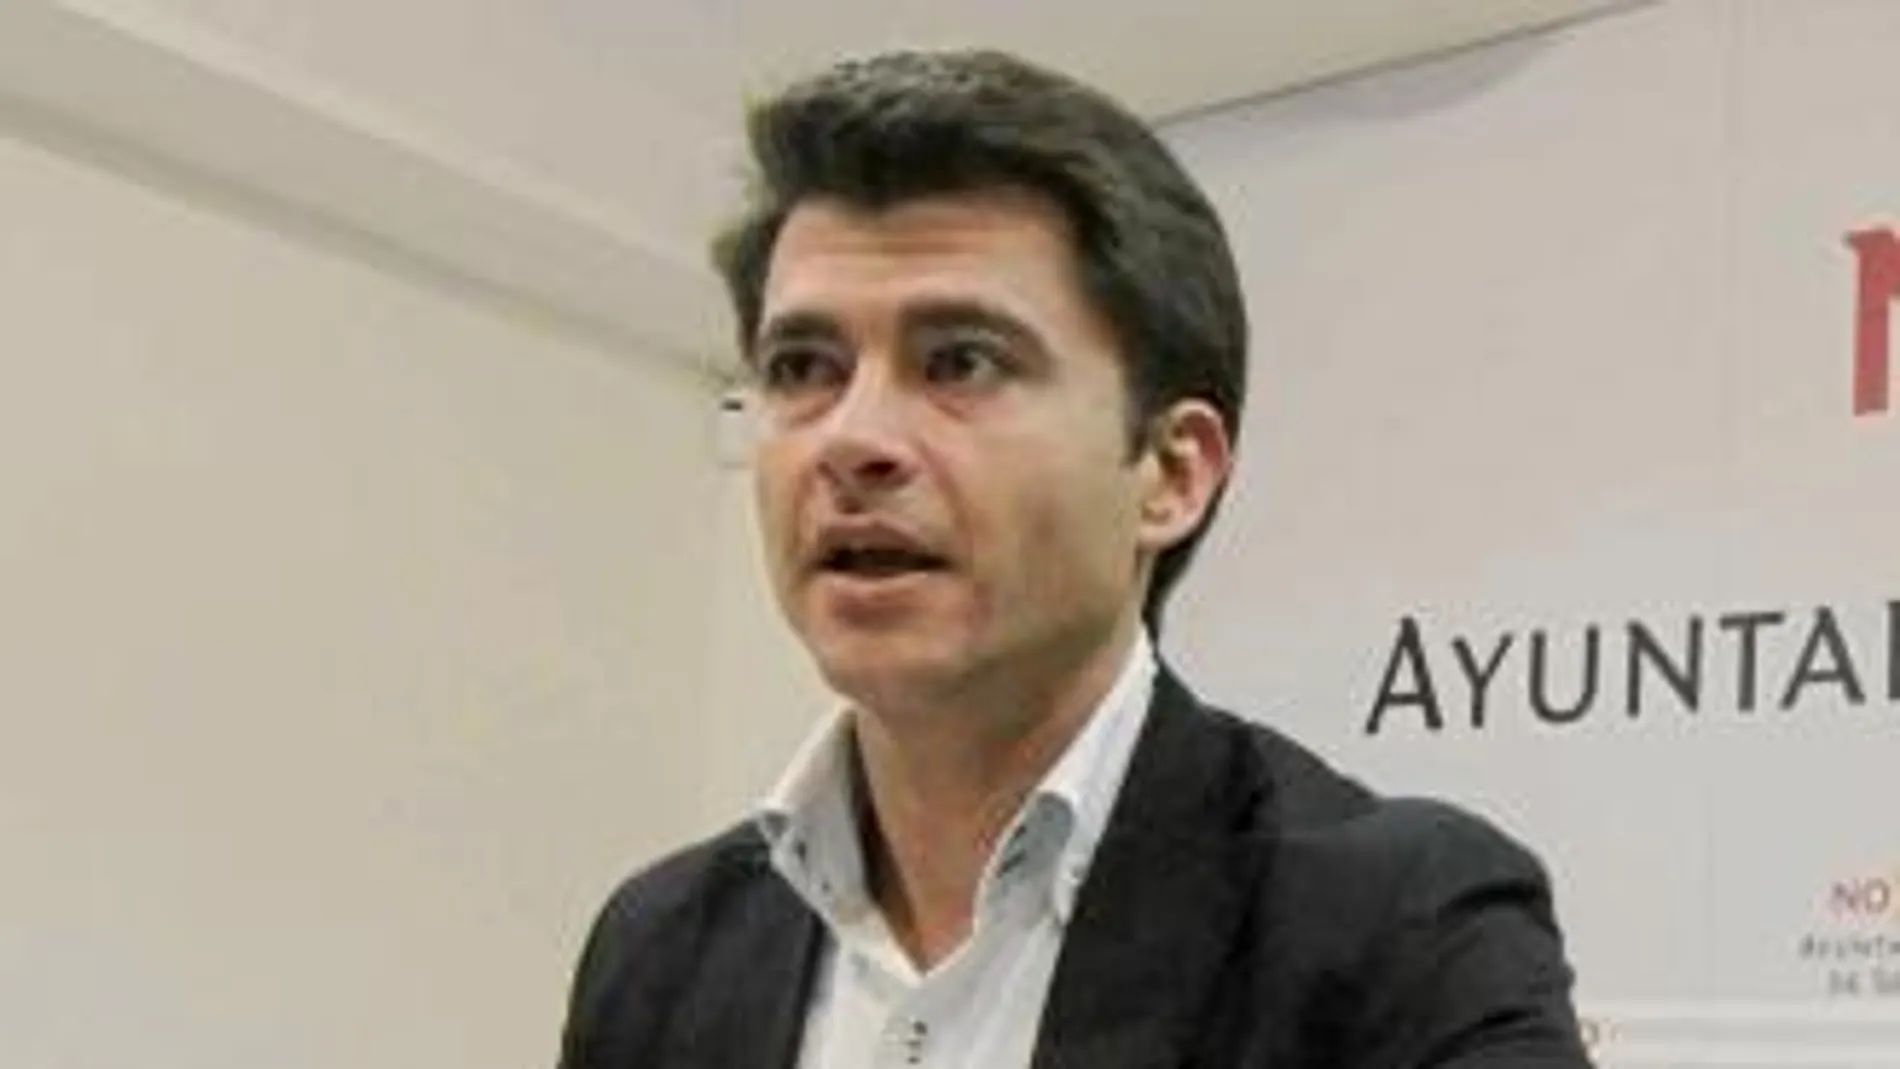 El concejal del PP Beltrán Pérez interpeló al director general de Mercasevilla para que aclarase la existencia del documento